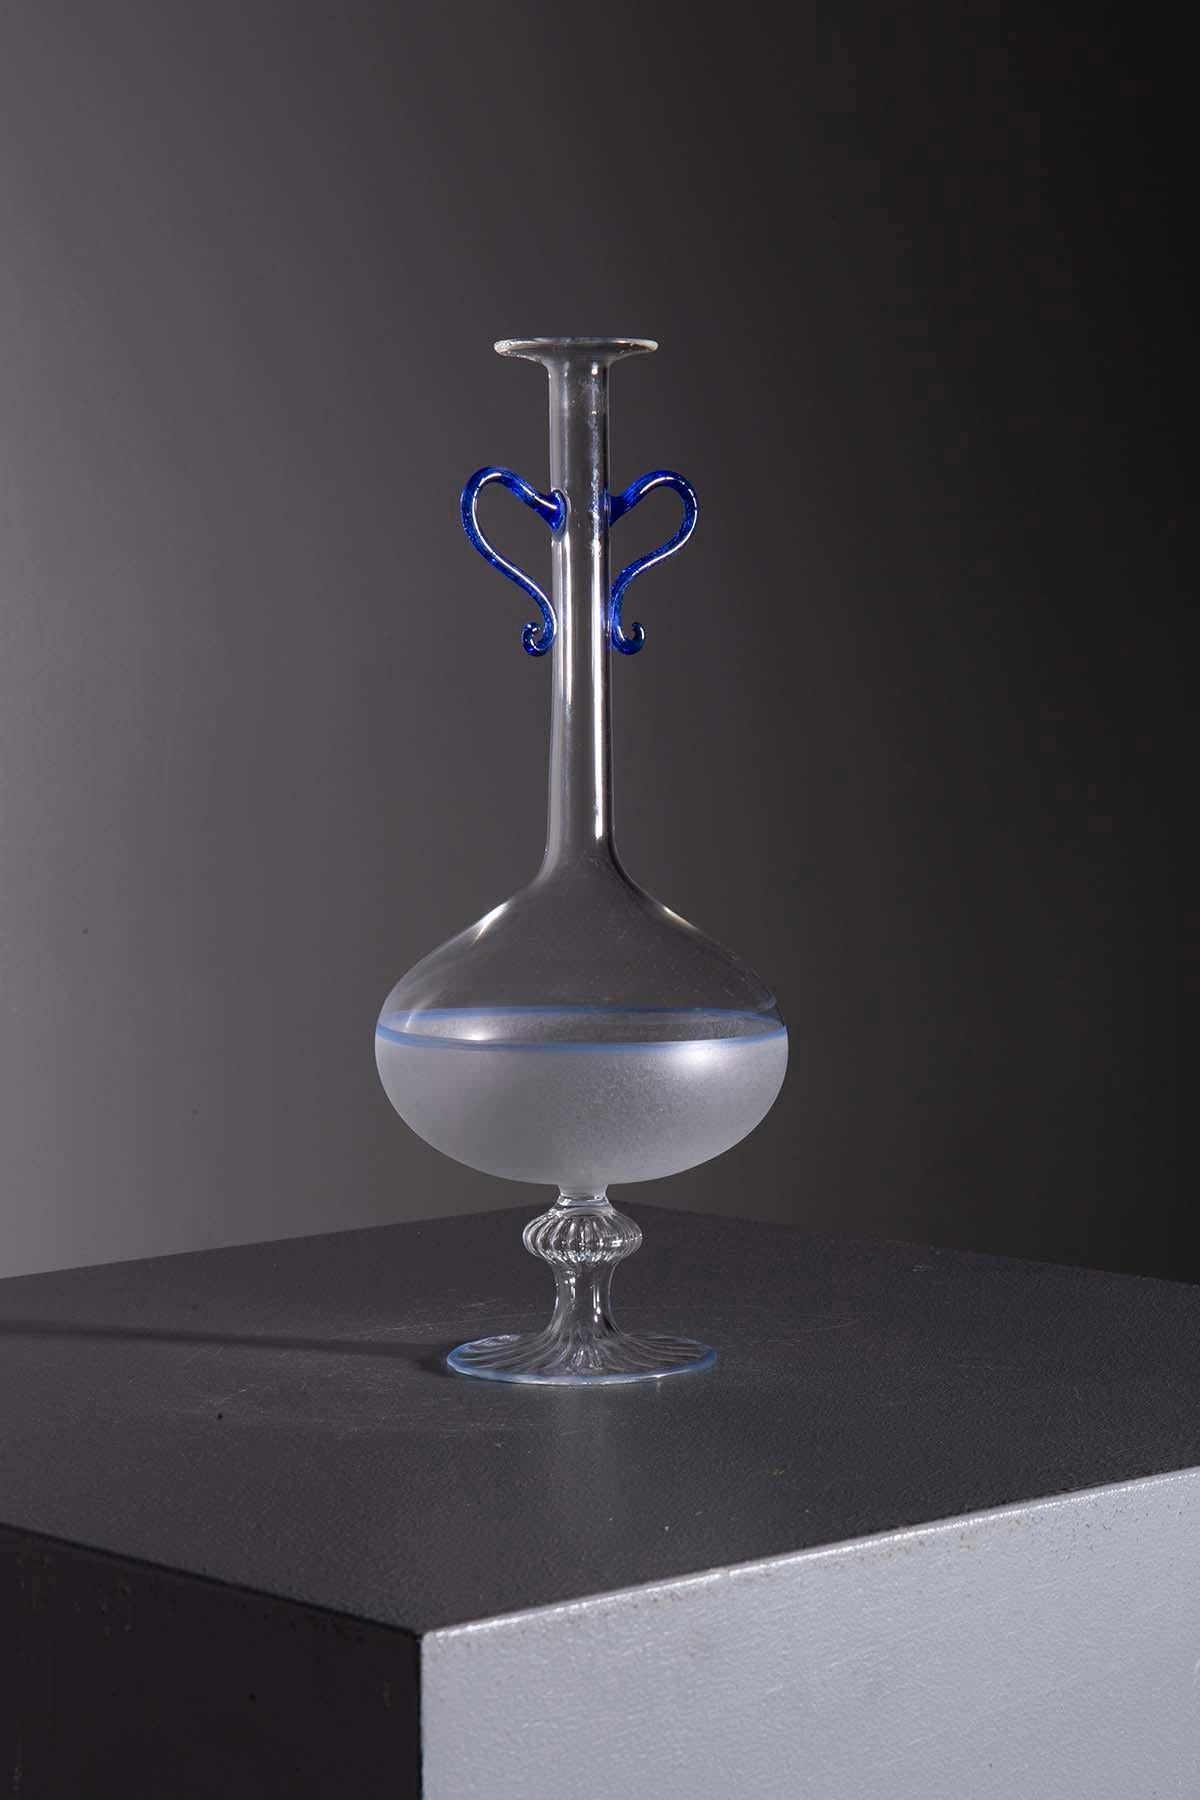 Vase Vintage Murano du début des années 1900 : L'Elegance du verre italien

Bienvenue dans le monde fascinant de l'art du verre de Murano, incarné par ce vase d'époque d'une extraordinaire beauté, fabriqué par la prestigieuse manufacture de Murano